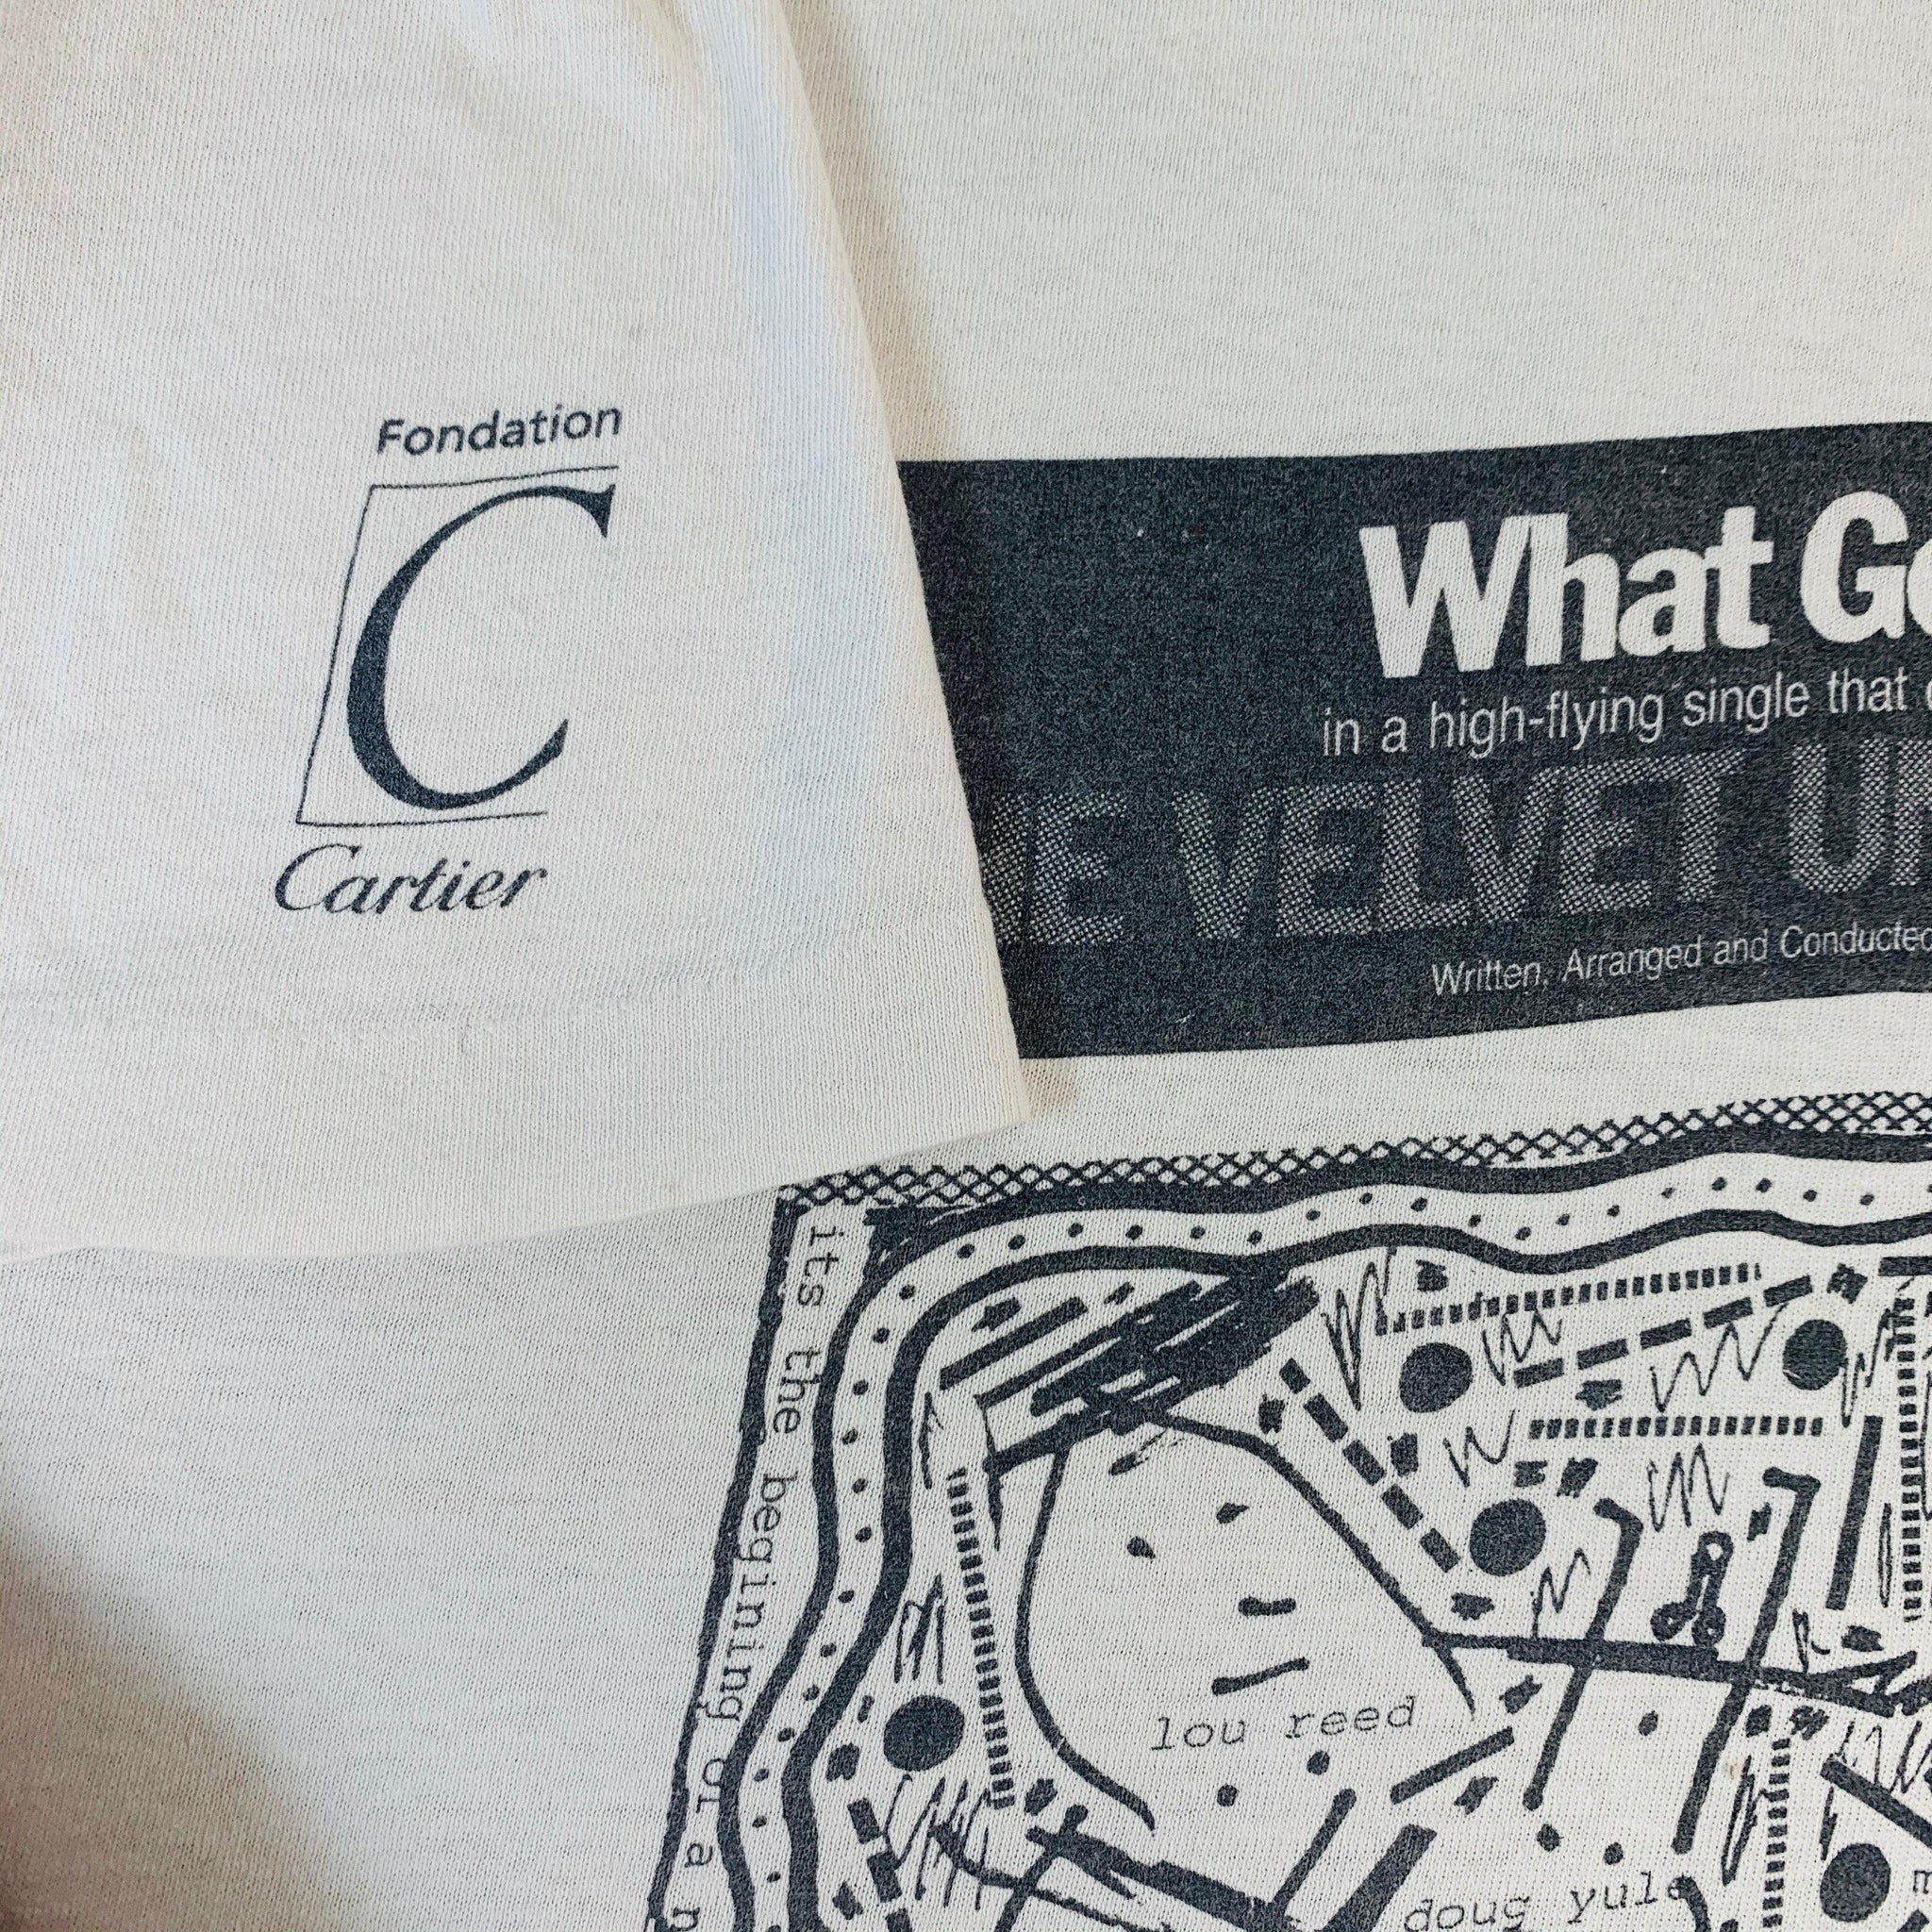 Velvet Underground Tour Shirt the Velvet Underground T-shirt -  Israel